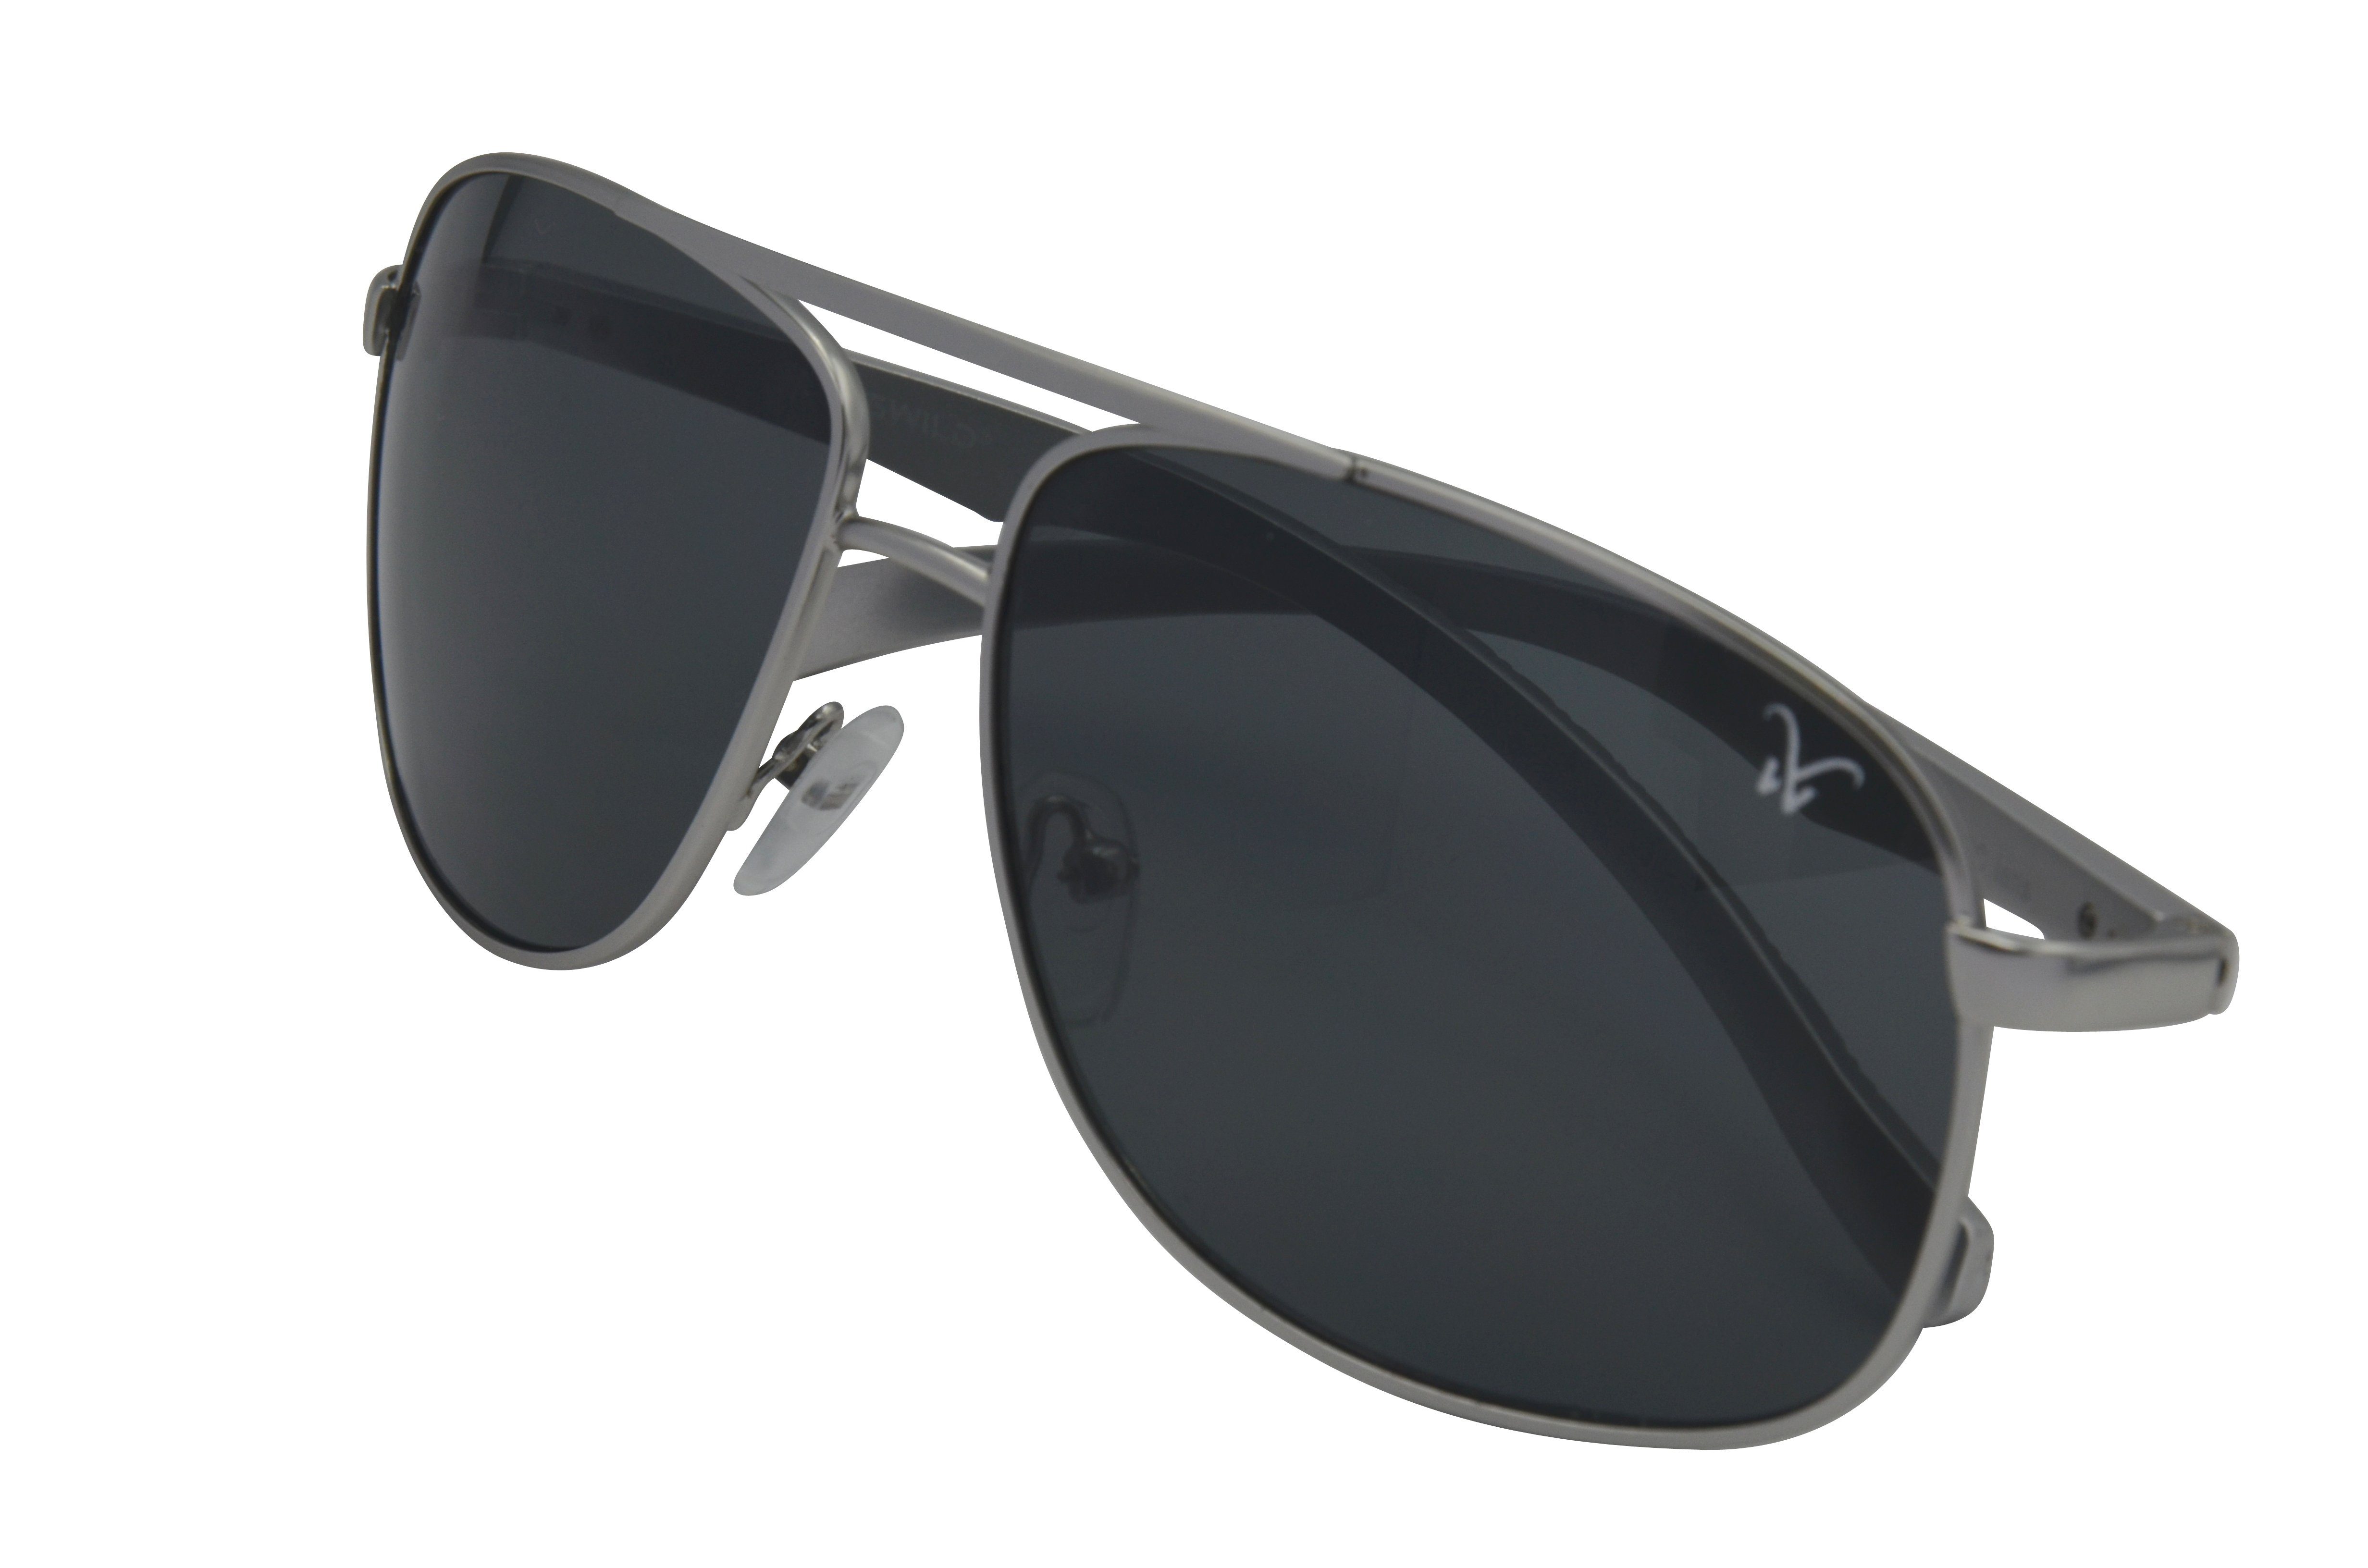 Gamswild Sonnenbrille WM1322 GAMSSTYLE Pilotenbrille Damen Unisex, silber-grau, grau-grün blau-gold, Herren Brille Mode